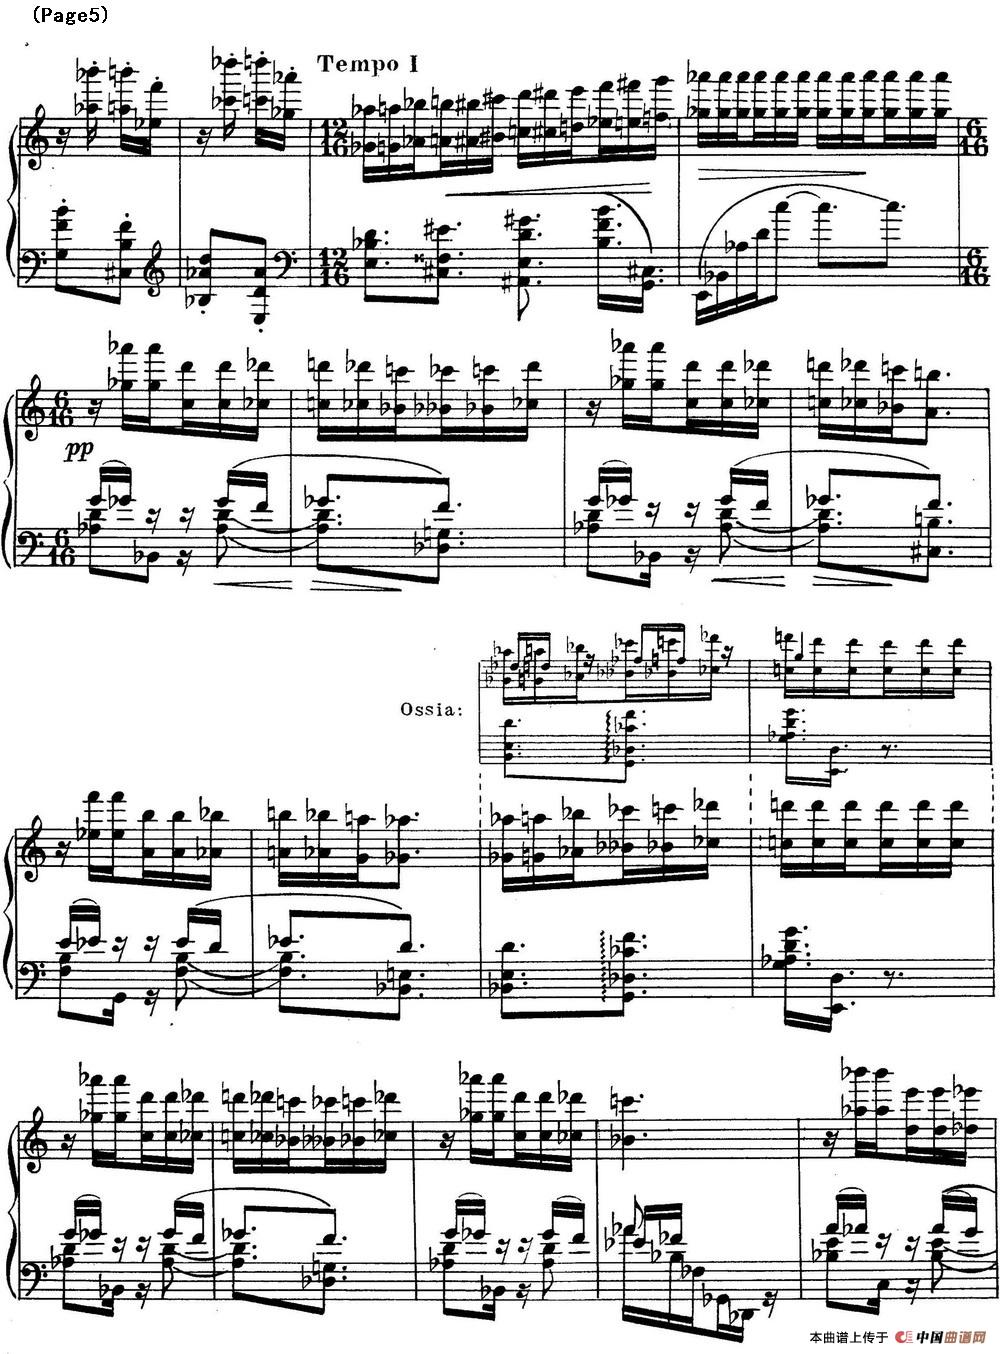 斯克里亚宾3首钢琴练习曲 Op65（No.1）(1)_Scriabin Etude Op.65 No.1_页面_5.jpg